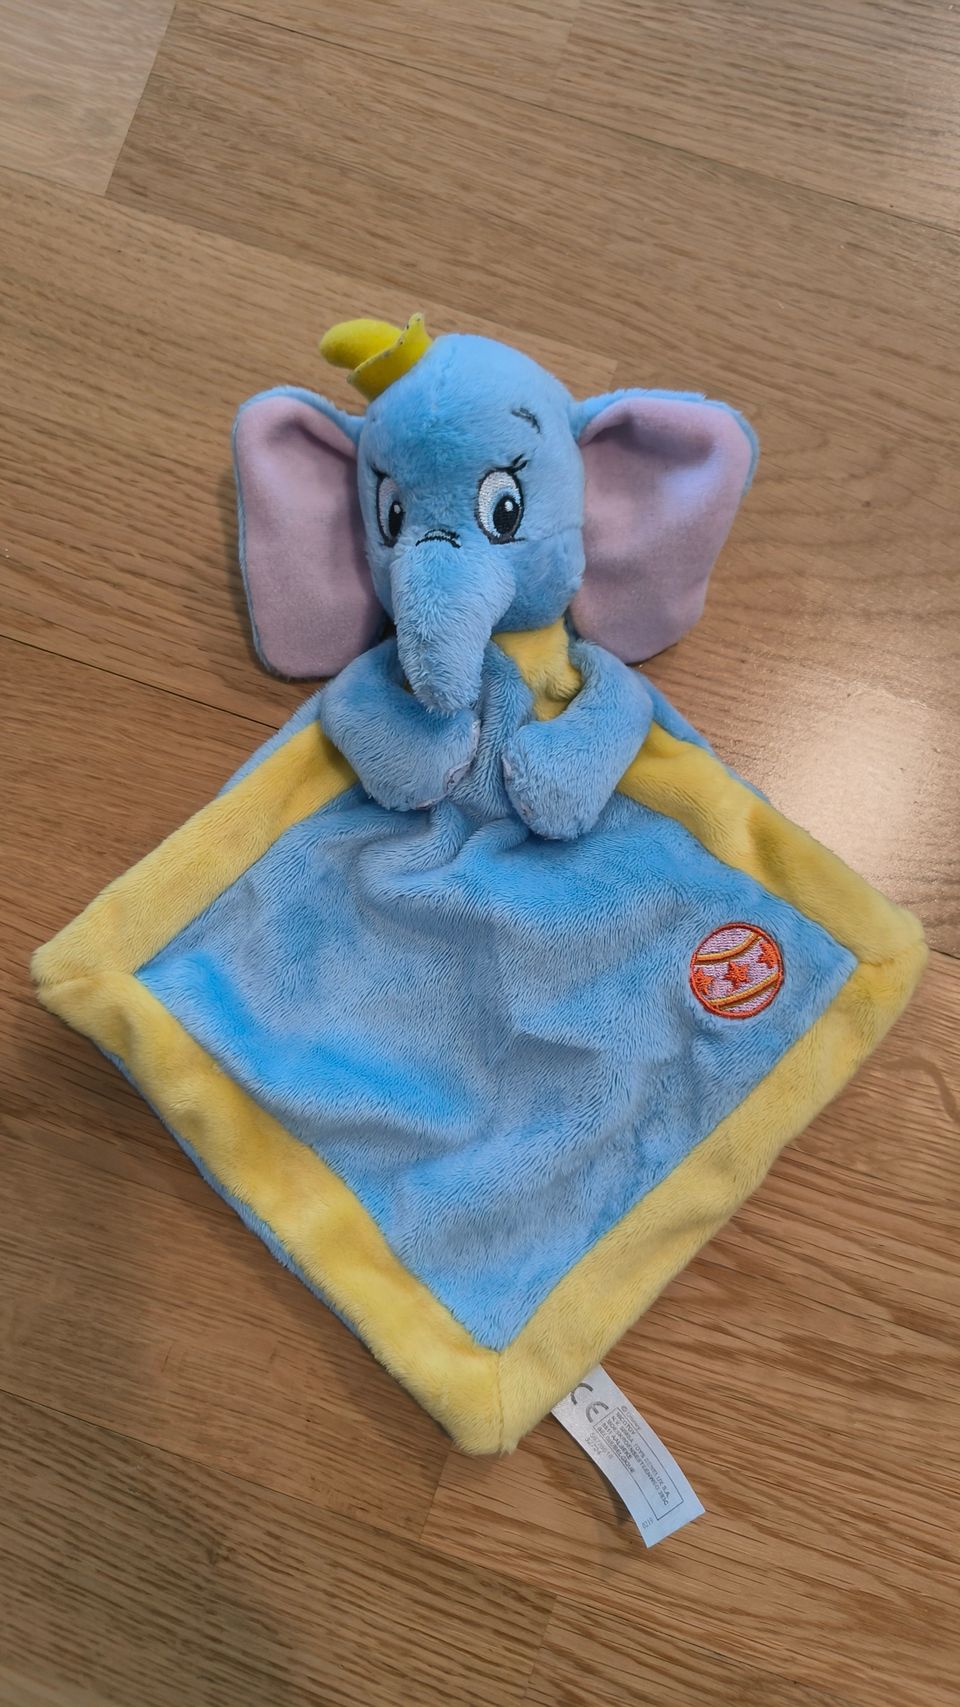 Dumbo unilelu